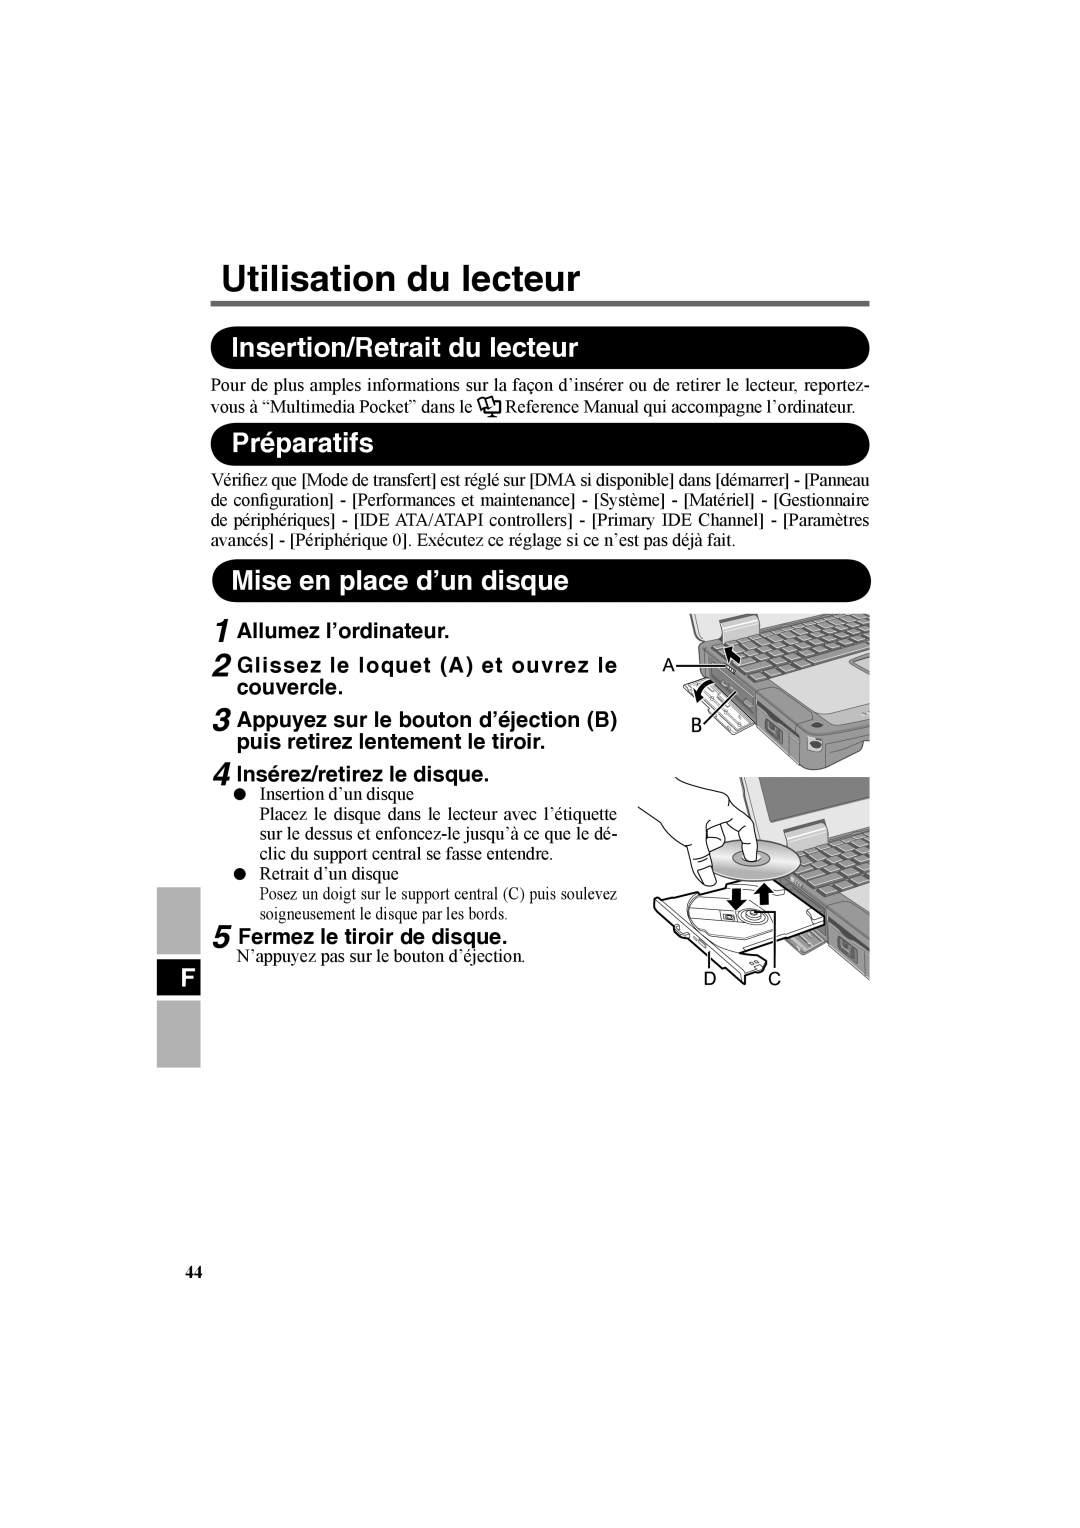 Panasonic CF-VDR301U Utilisation du lecteur, Insertion/Retrait du lecteur, Préparatifs, Mise en place d’un disque 